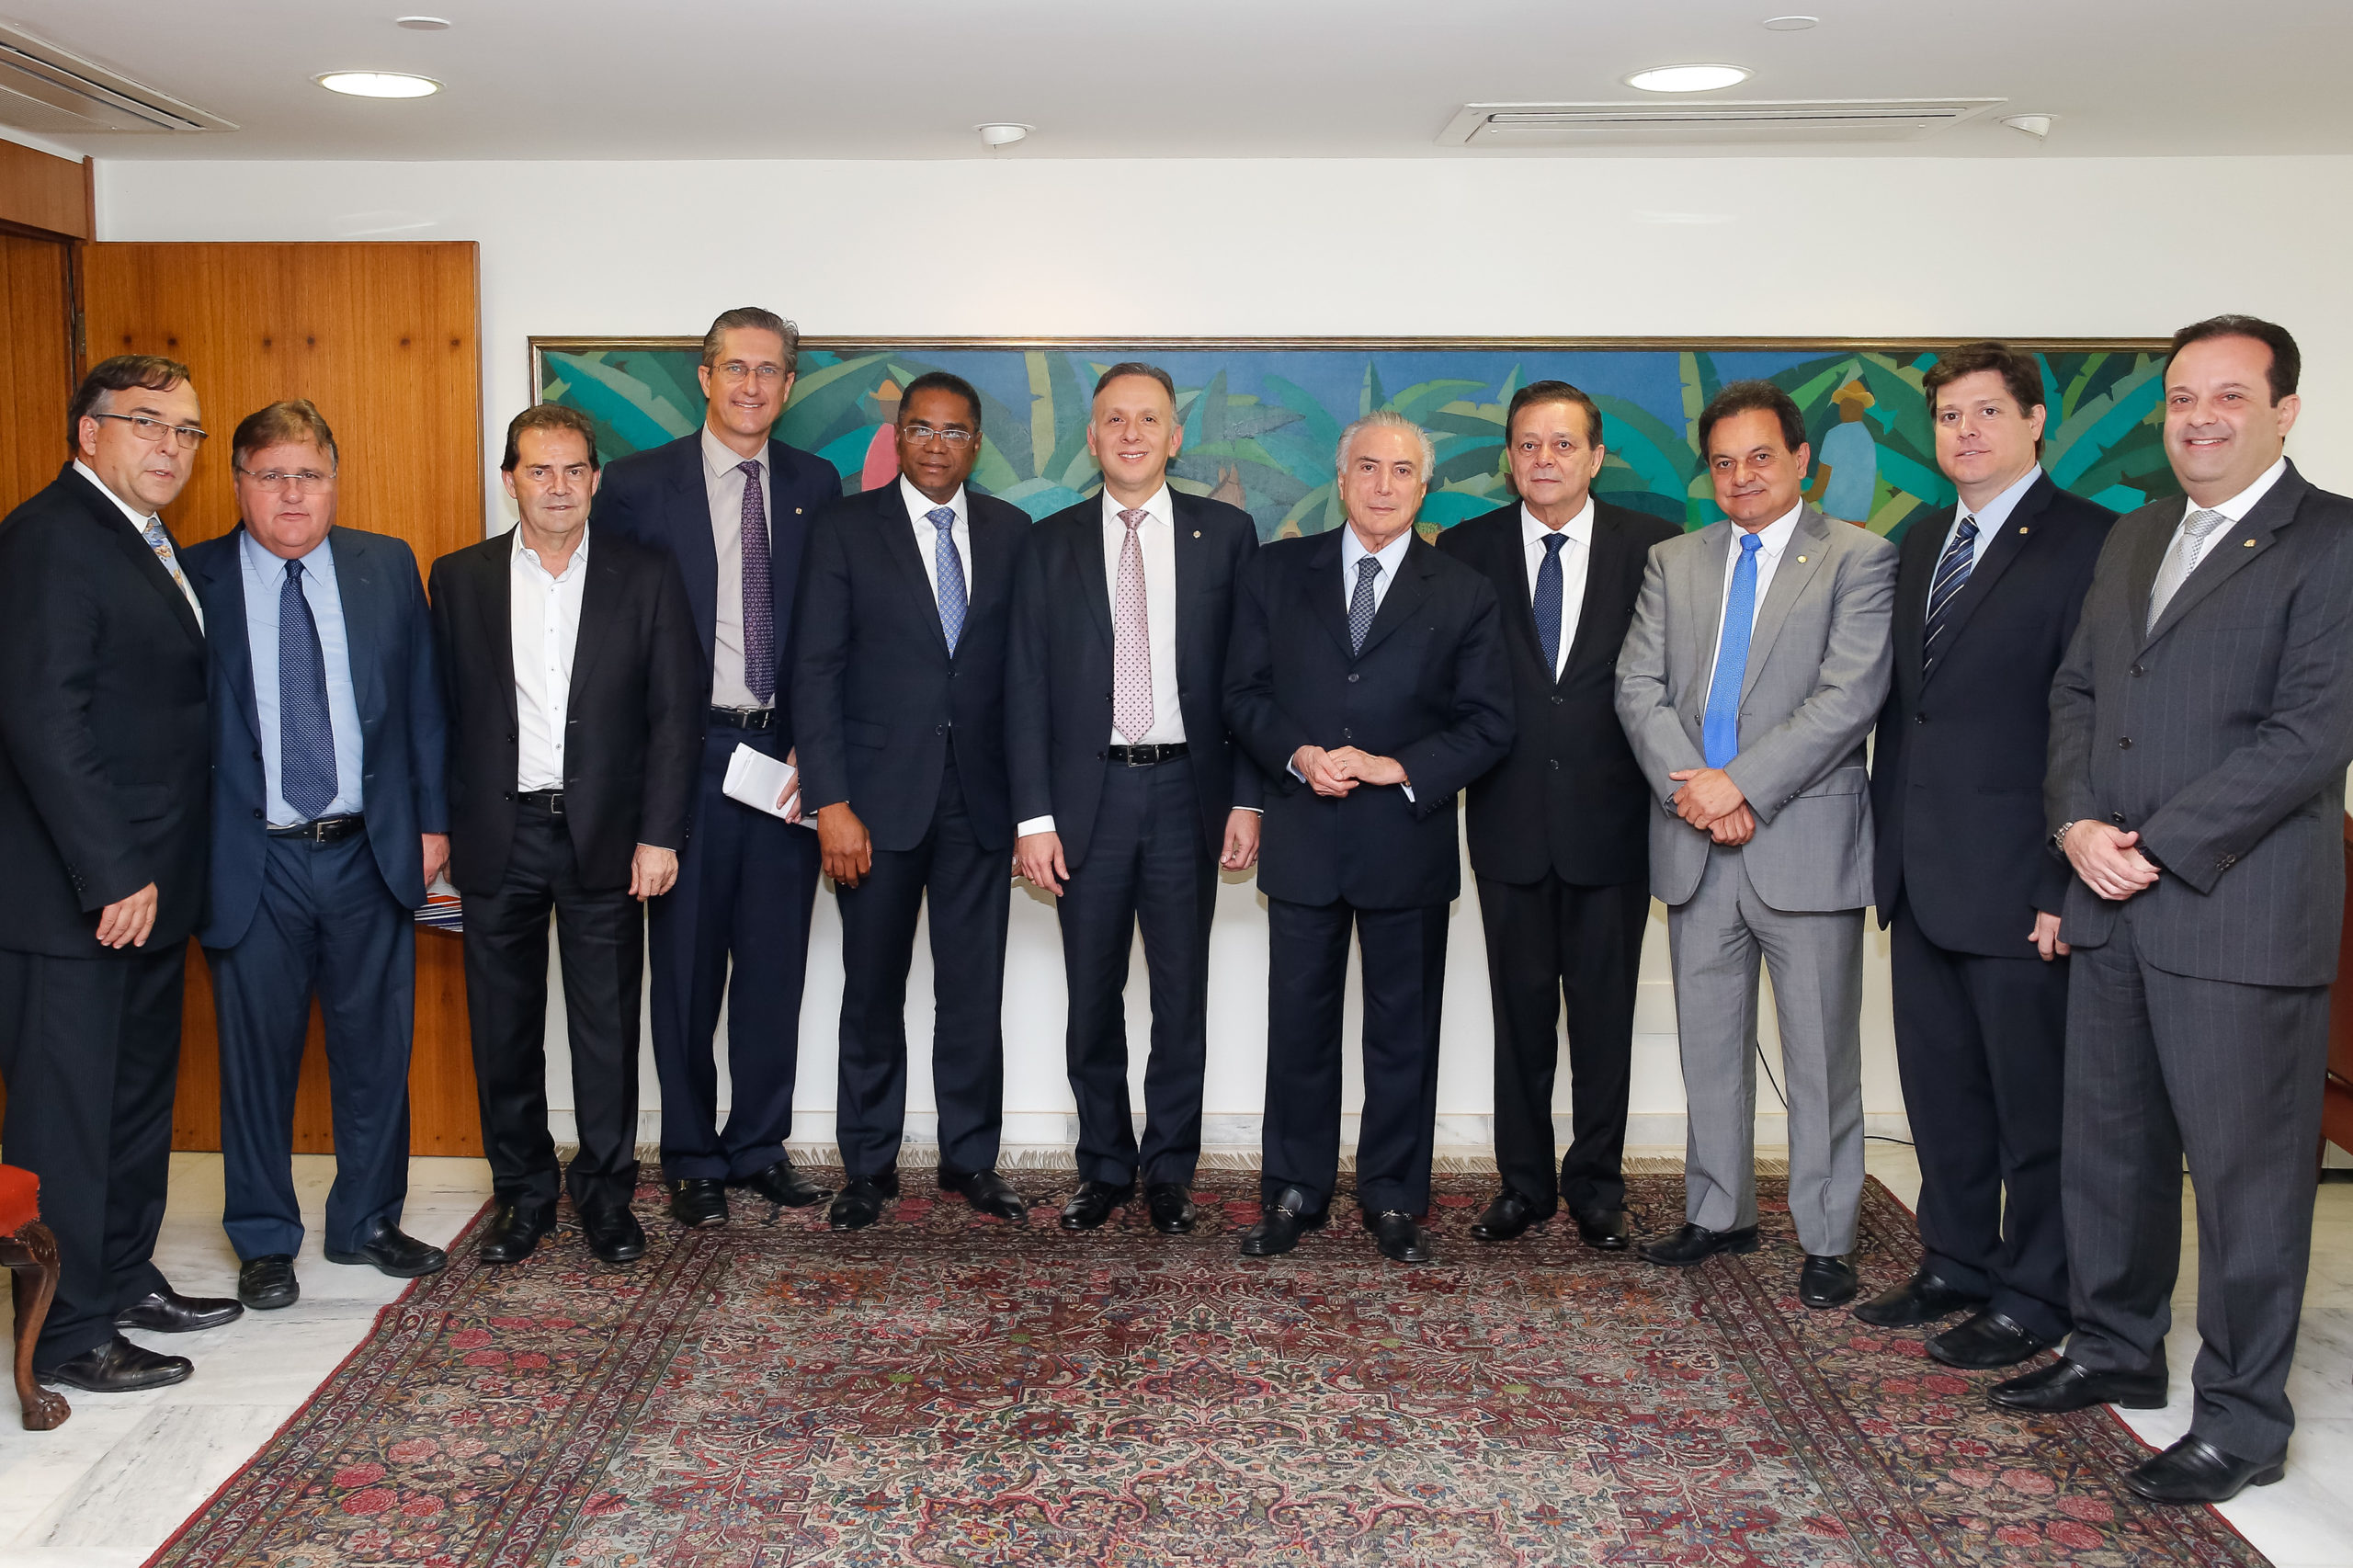 Reunião do presidente da República, Michel Temer, com líderes partidários